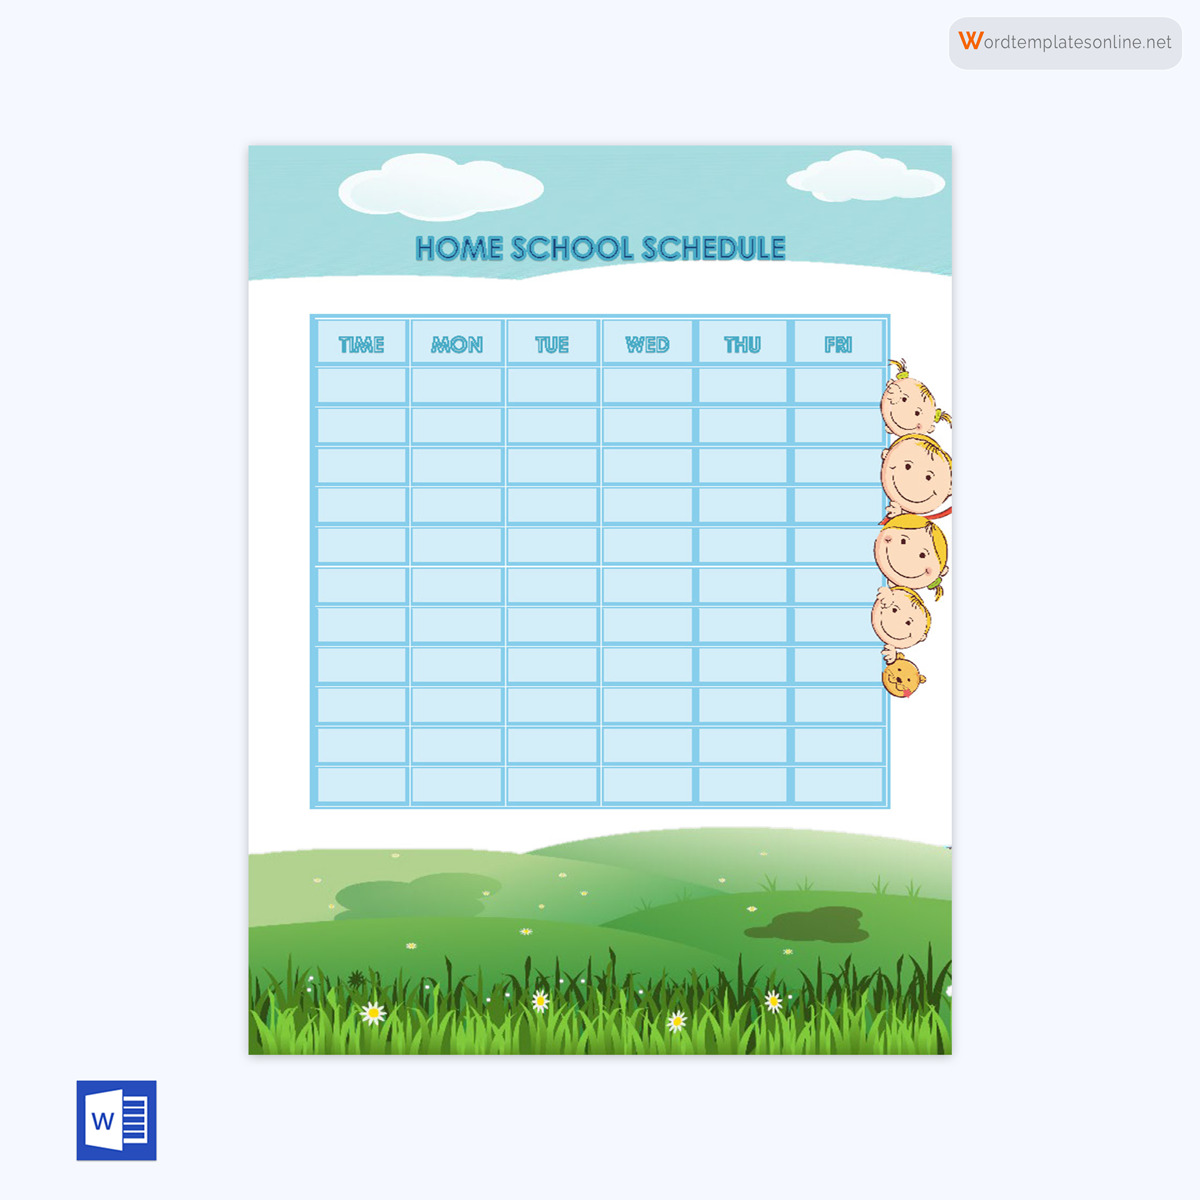 Free Homeschool Schedule Template